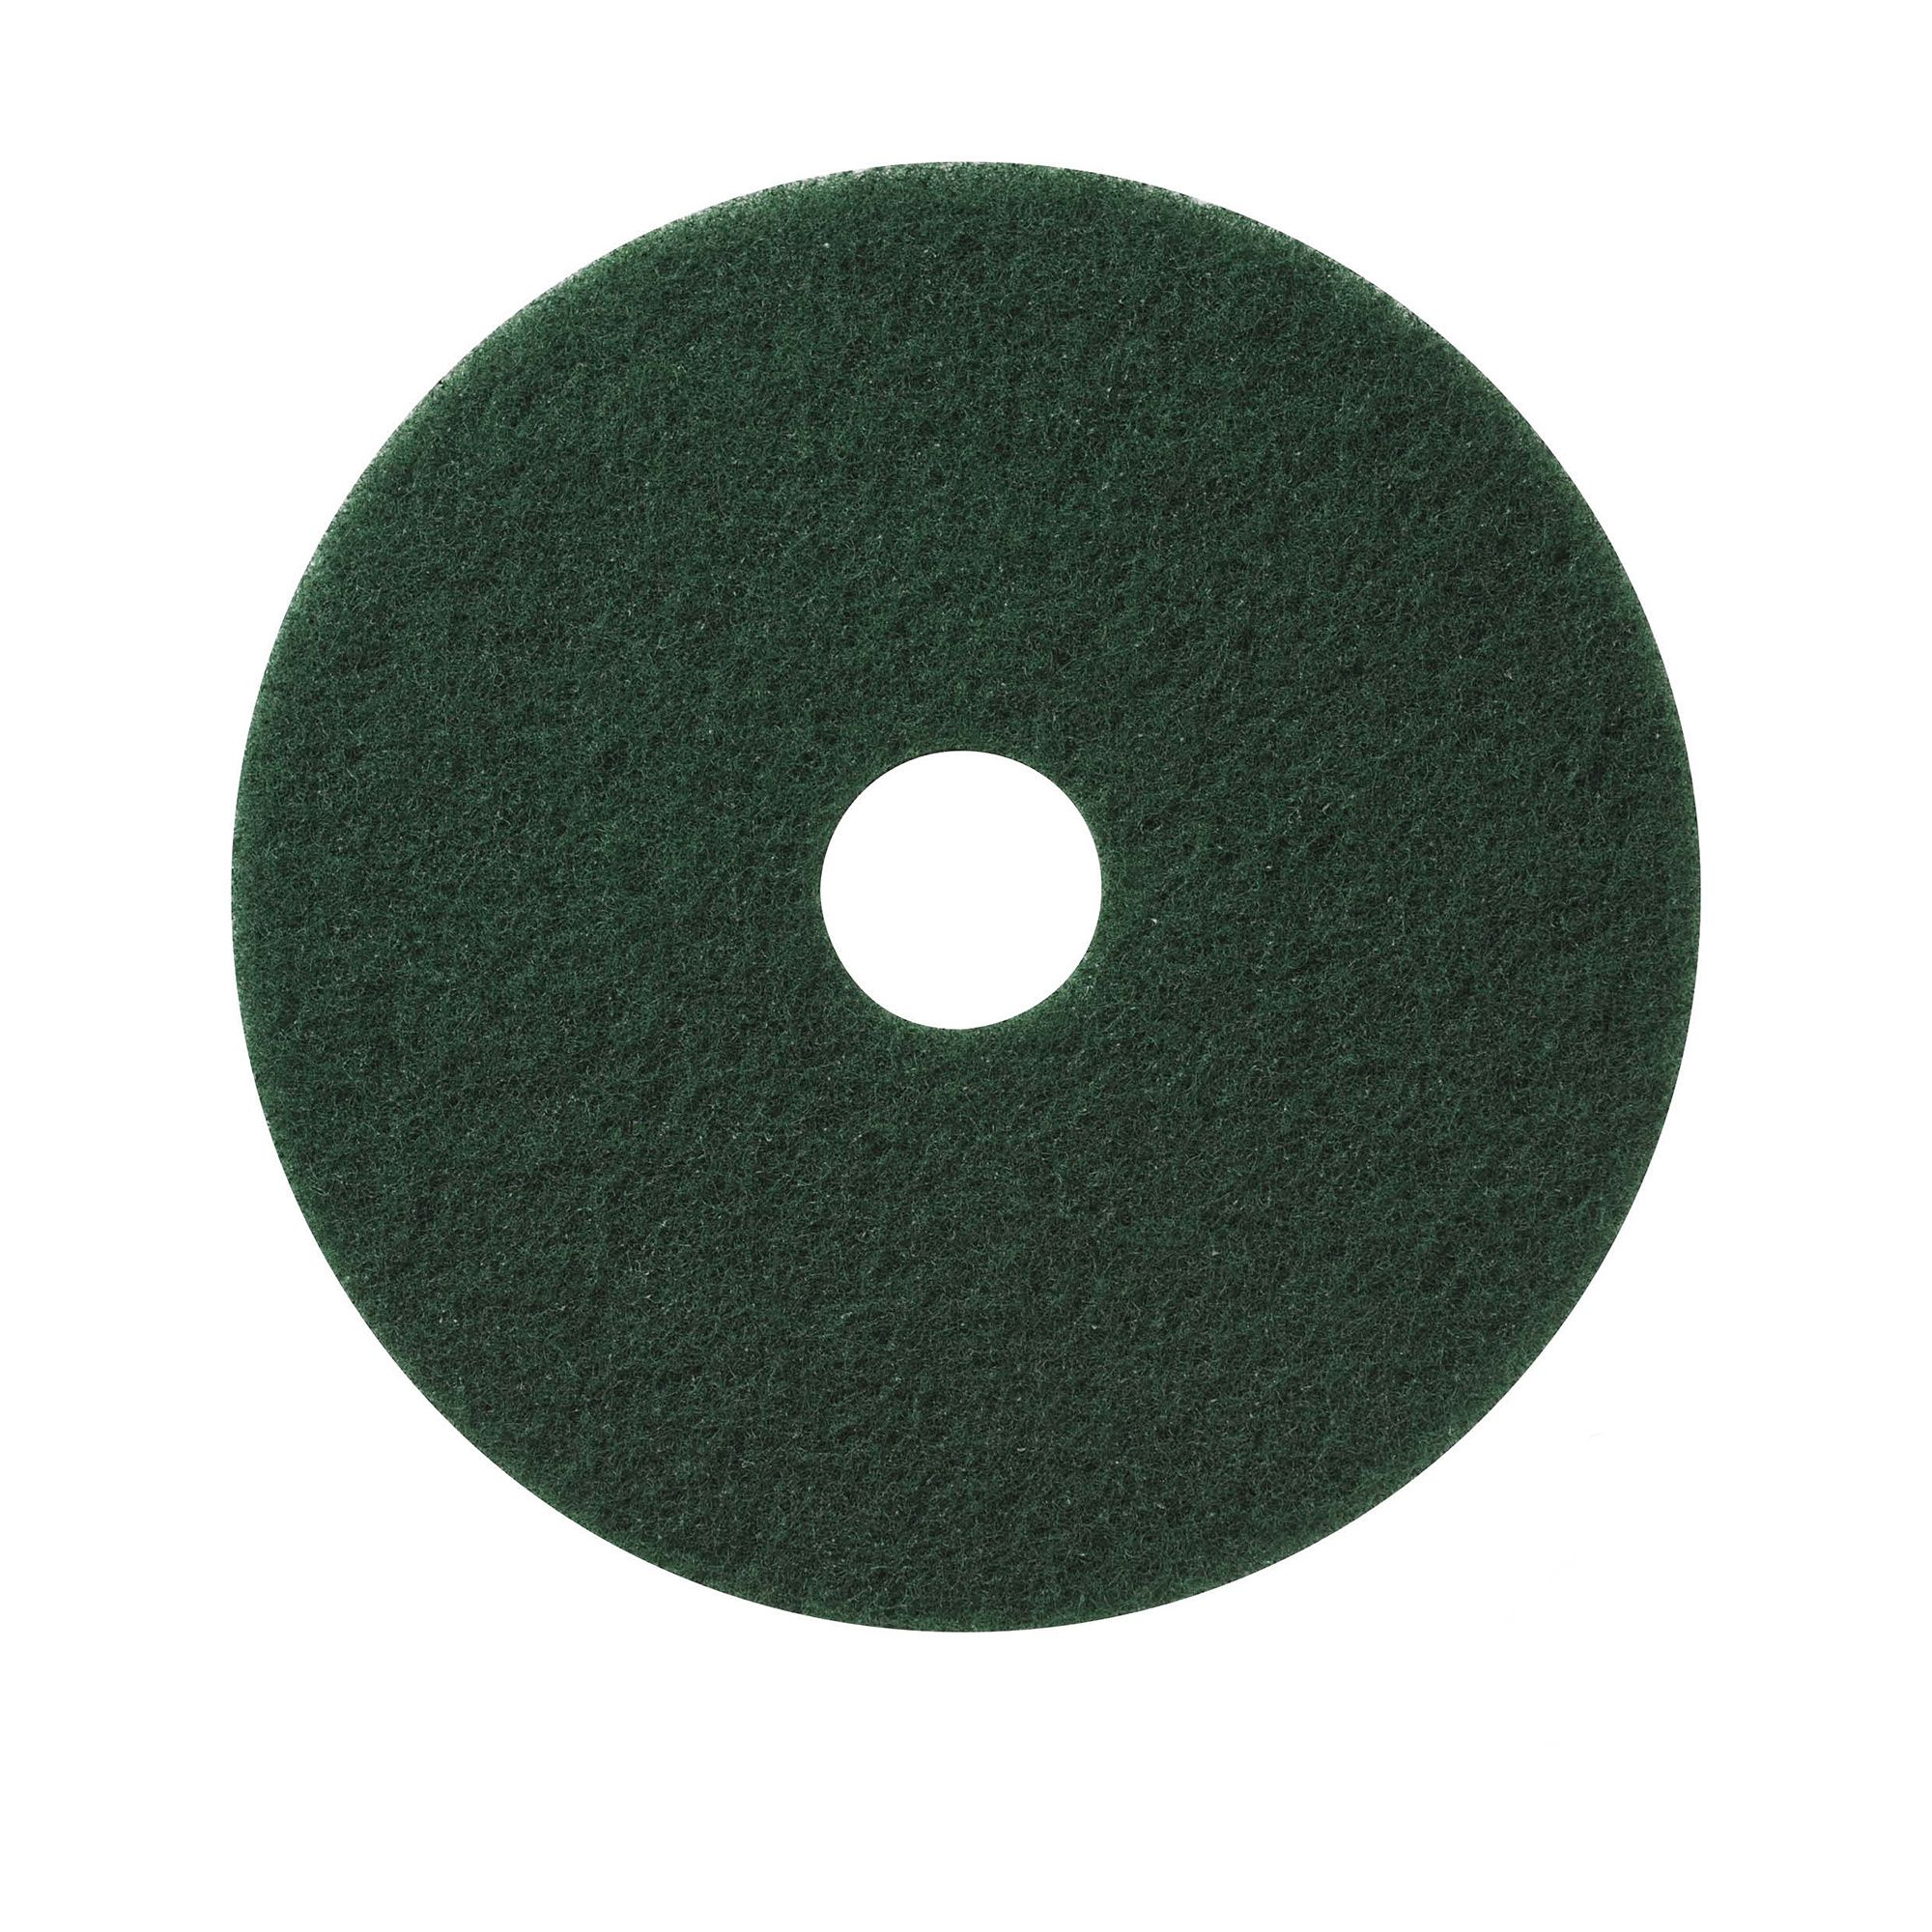 NuPad groen (zwaar schrobben), per 5 stuks, 11 inch / 280 mm